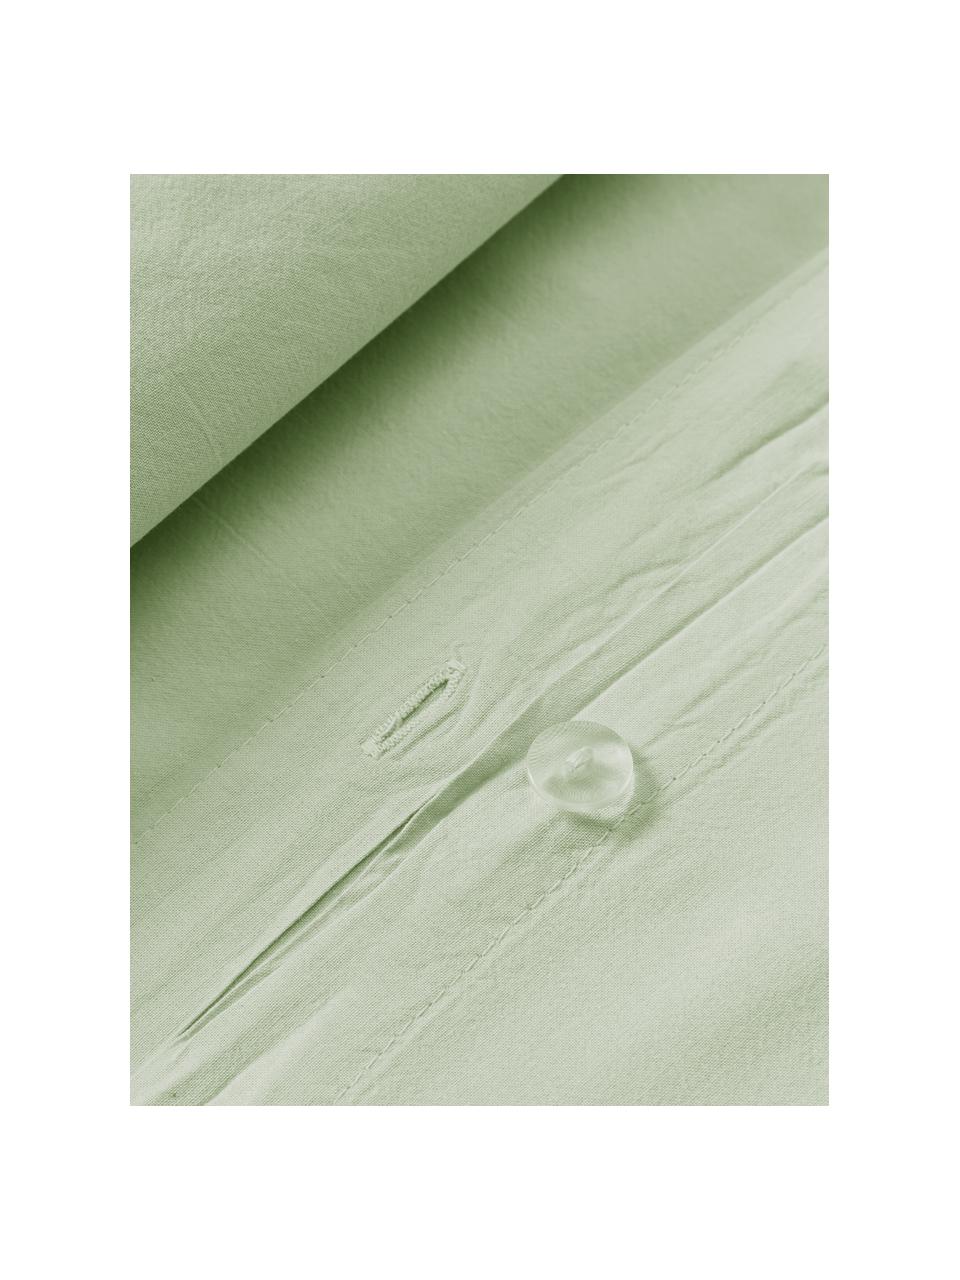 Funda nórdica de algodón lavado Darlyn, 100% algodón
Densidad de hilo 150 TC, calidad estándar

El algodón da una sensación agradable y suave en la piel, absorbe bien la humedad y es adecuado para personas alérgicas.

Este tejido ha sido sometido a un proceso de lavado especial que le da un aspecto Softwash irregular y resistente, pero siendo suave al tacto, flexible y cómodo. Además, su aspecto arrugado natural hace que no necesite planchado.

El material utilizado para este producto ha sido probado contra sustancias nocivas y está certificado según el STANDARD 100 por OEKO-TEX®, 4265CIT, CITEVE., Verde salvia, Cama 90 cm (155 x 220 cm)